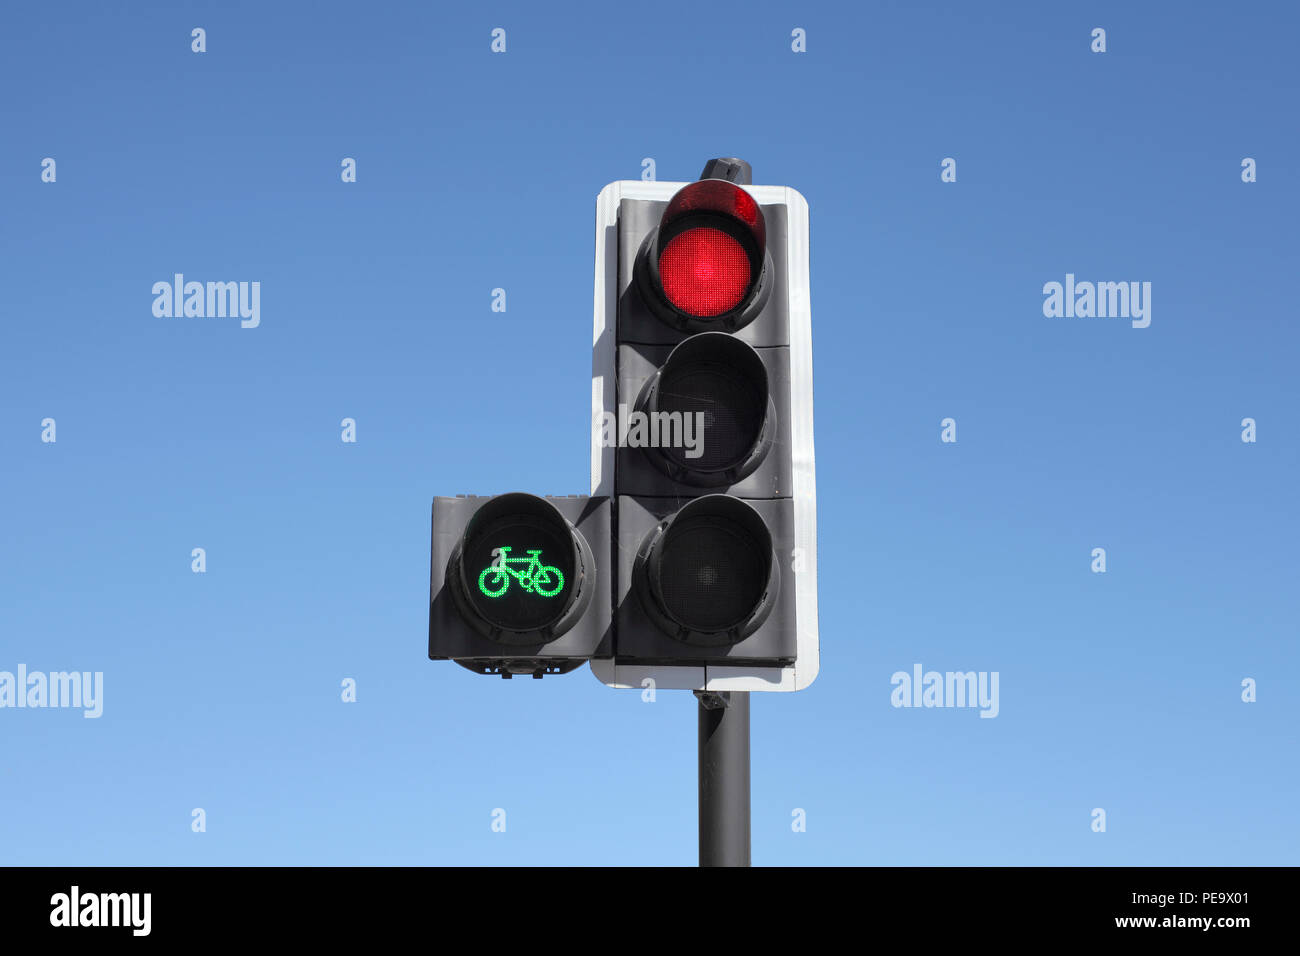 Un ciclo de la señal de tráfico de prioridad. La luz verde da ciclistas un headstart, permitiéndoles cruce antes que el resto del tráfico. Foto de stock